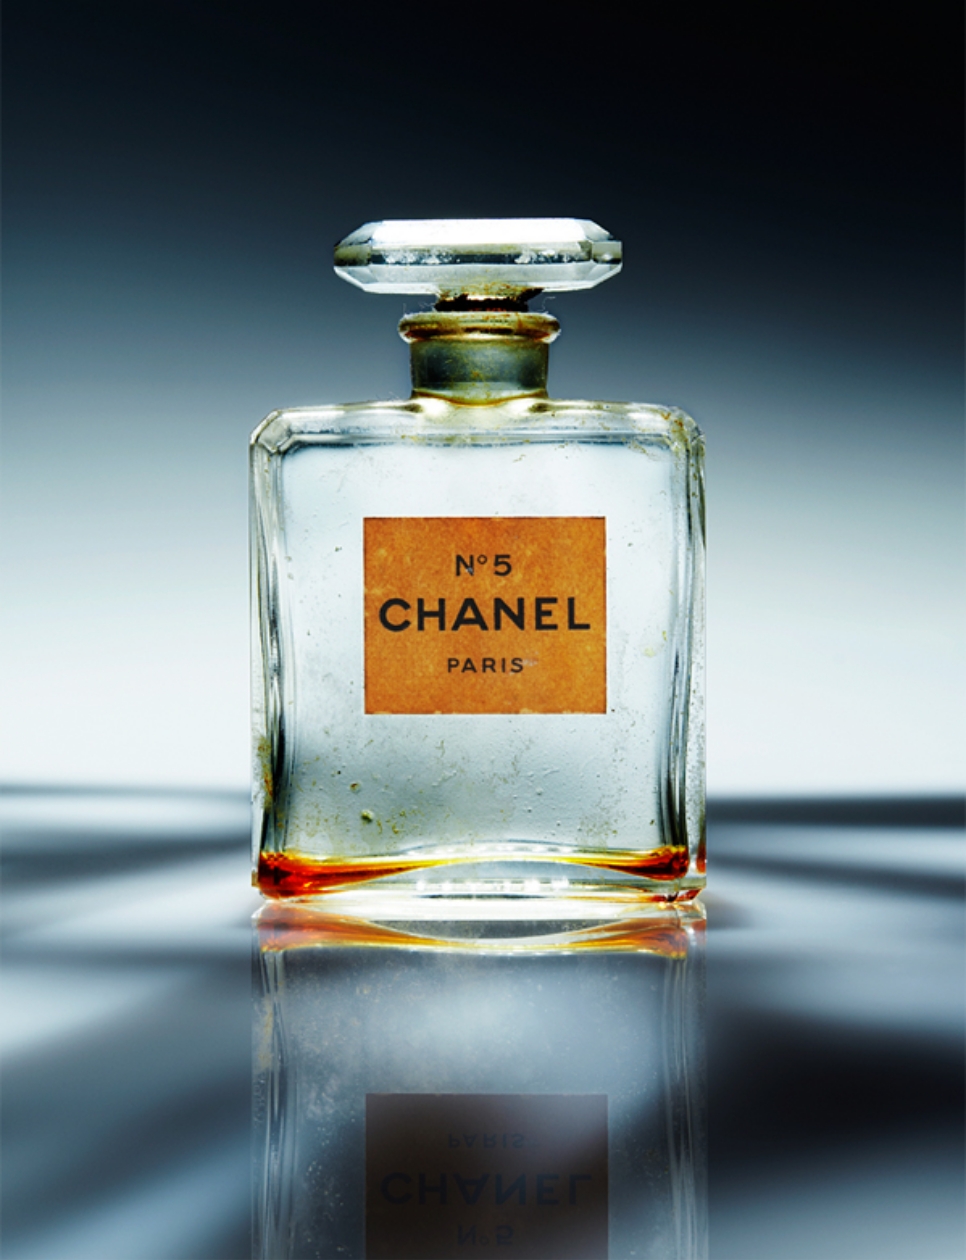 Botol orisinil Chanel N°5 dari tahun 1915